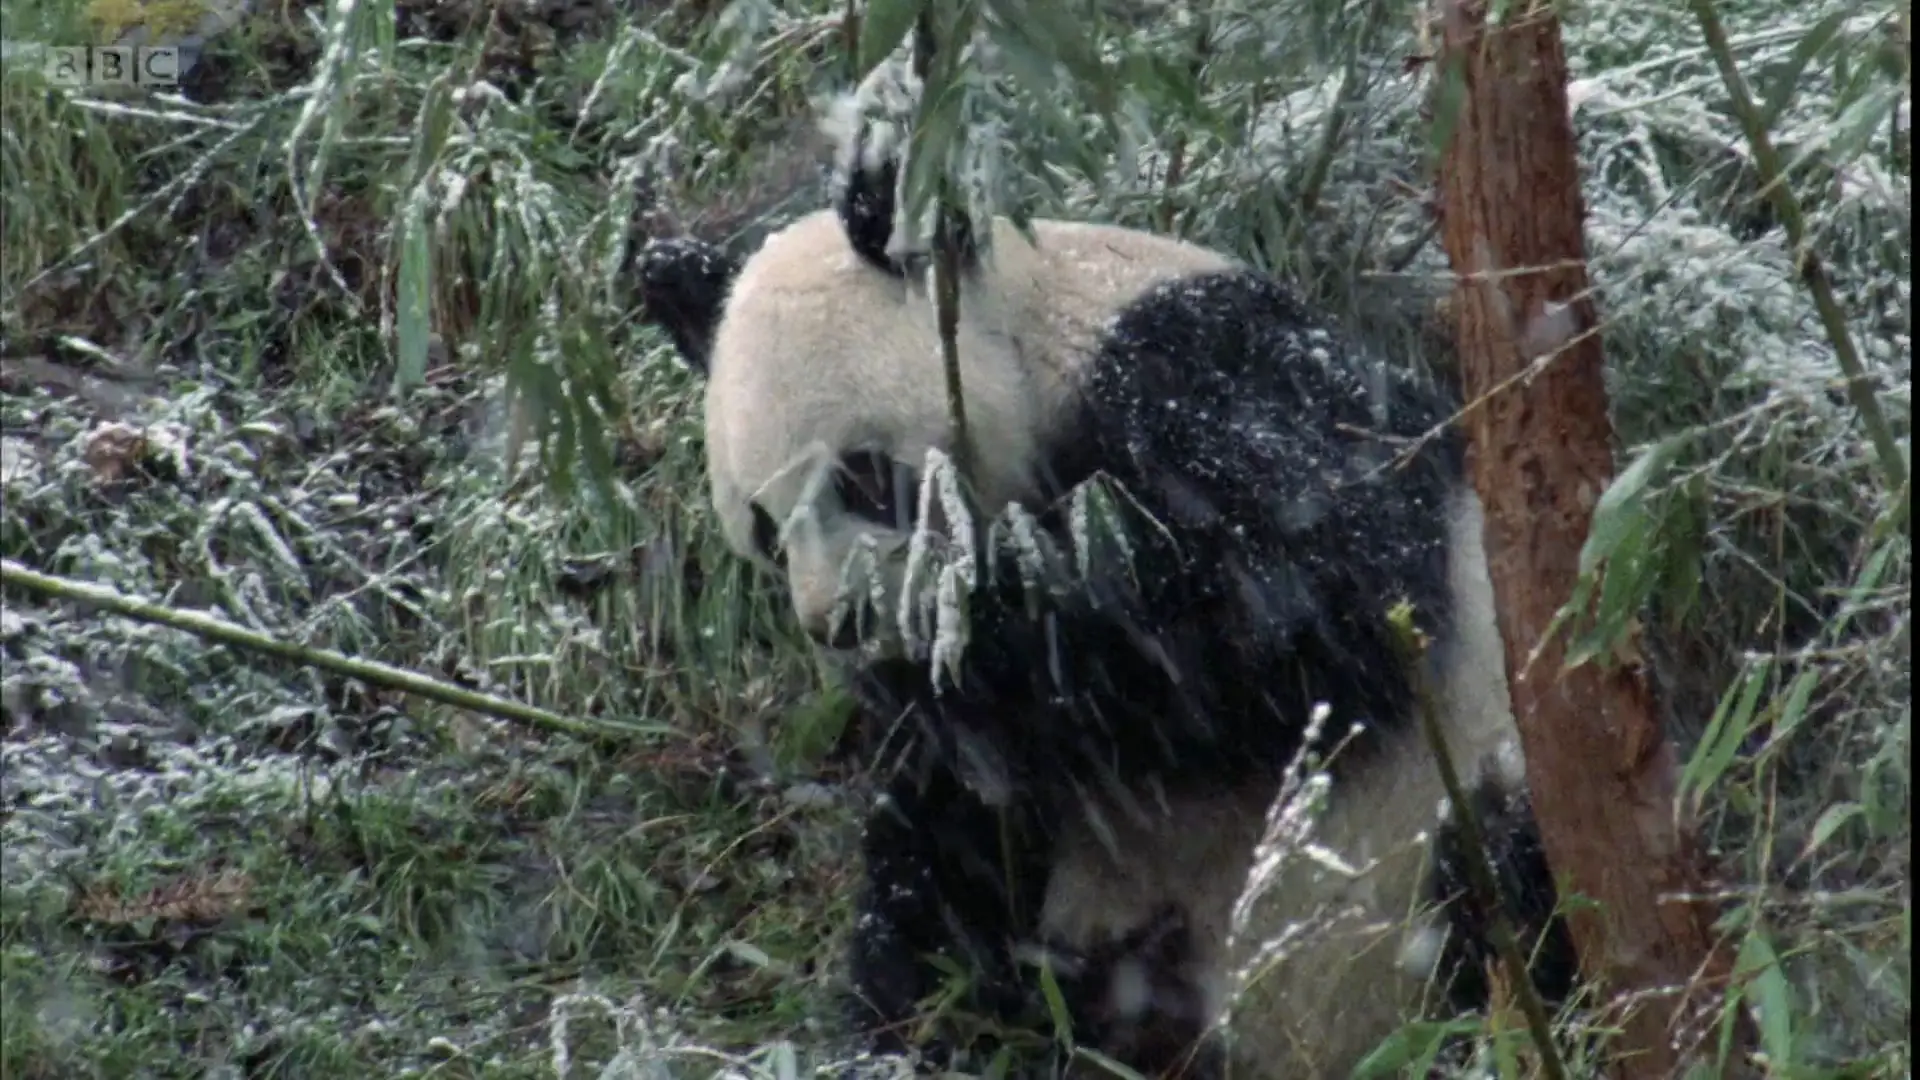 Qinling giant panda (Ailuropoda melanoleuca qinlingensis) as shown in Planet Earth - Mountains